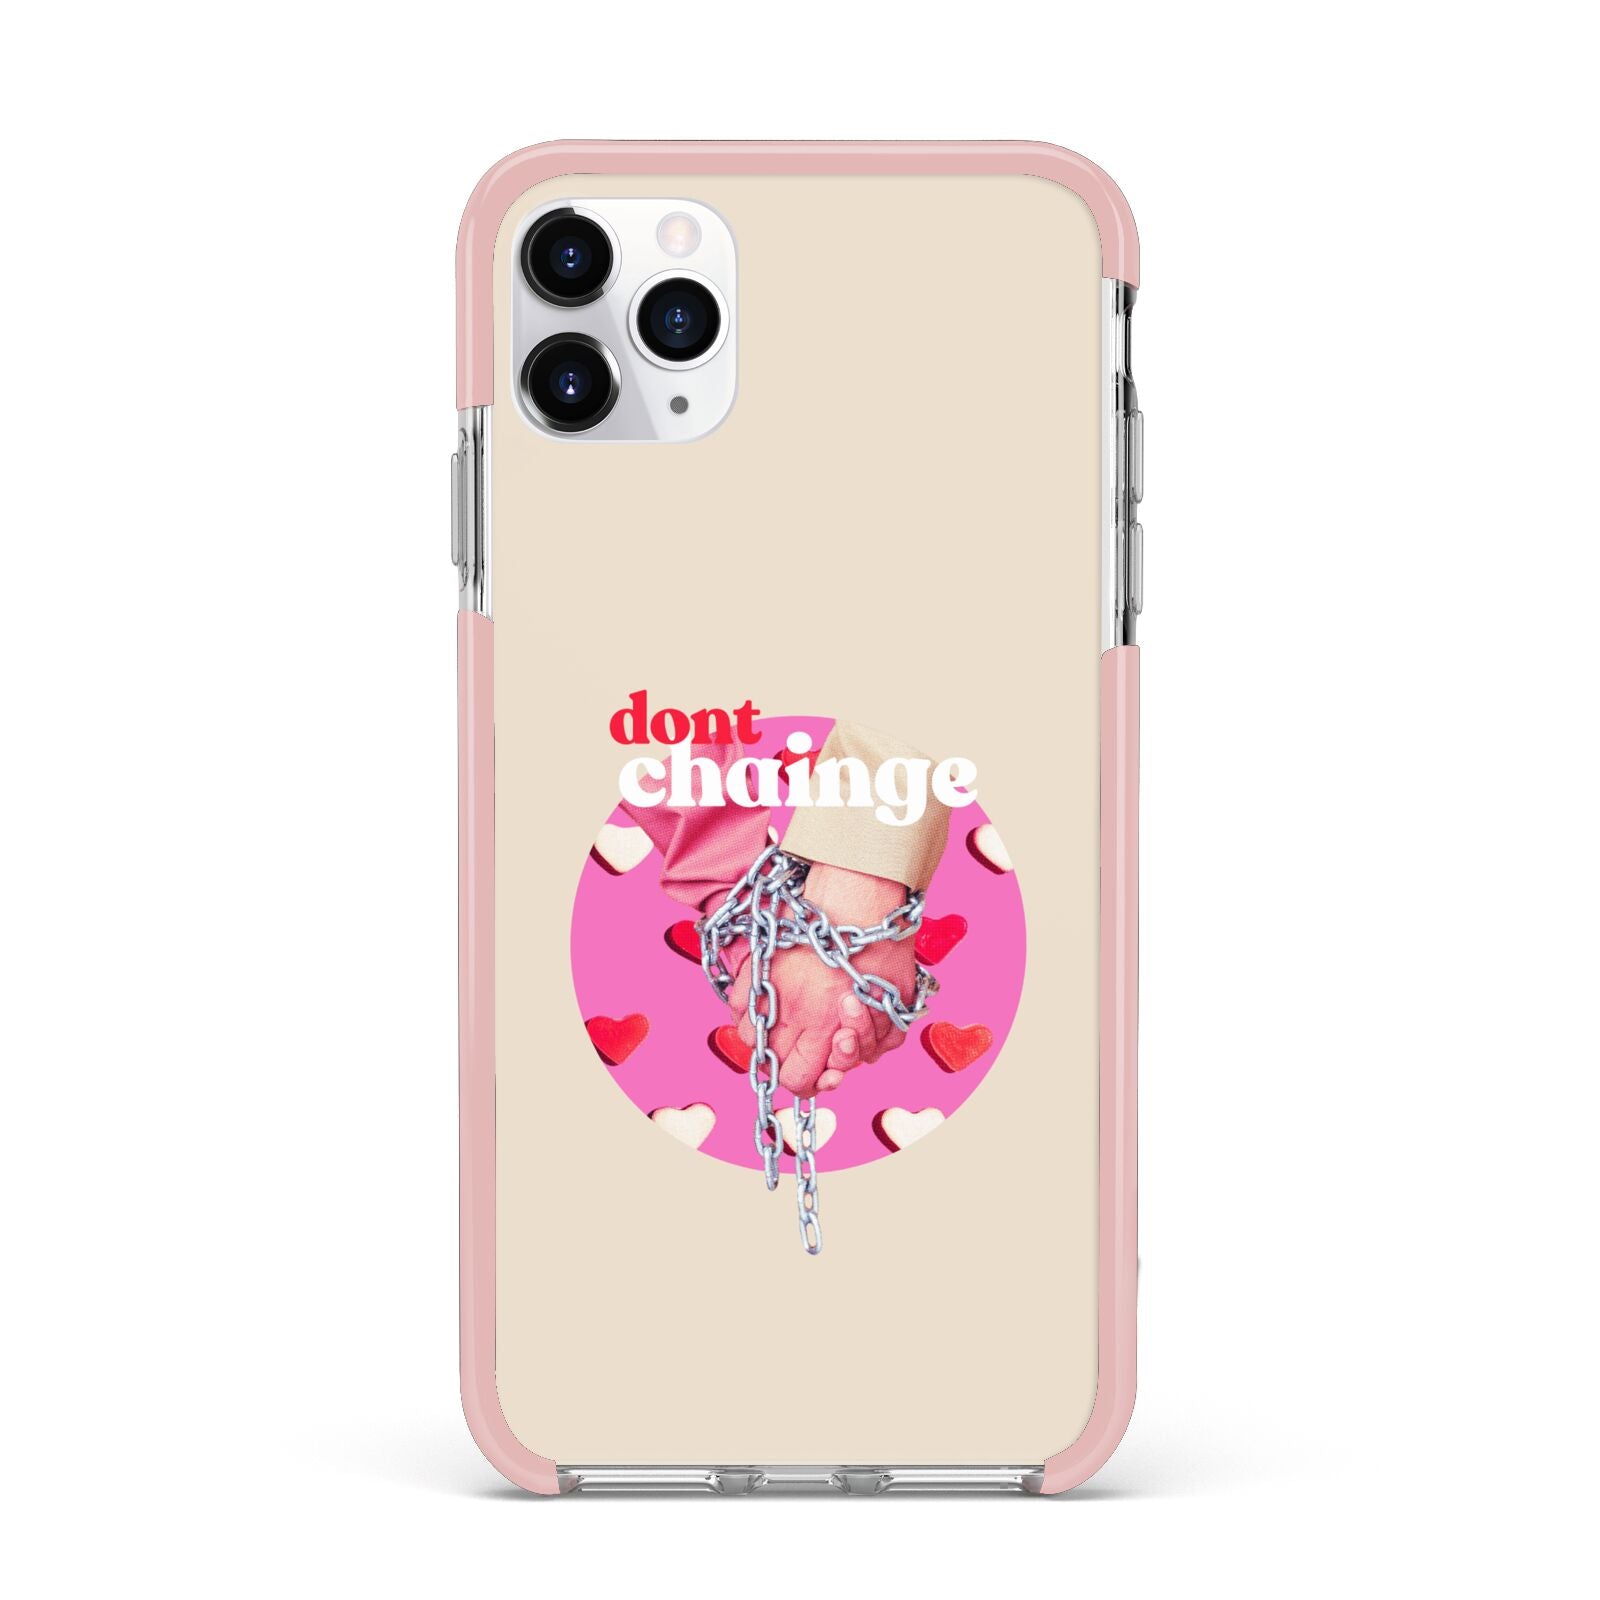 Retro Valentines Quote iPhone 11 Pro Max Impact Pink Edge Case